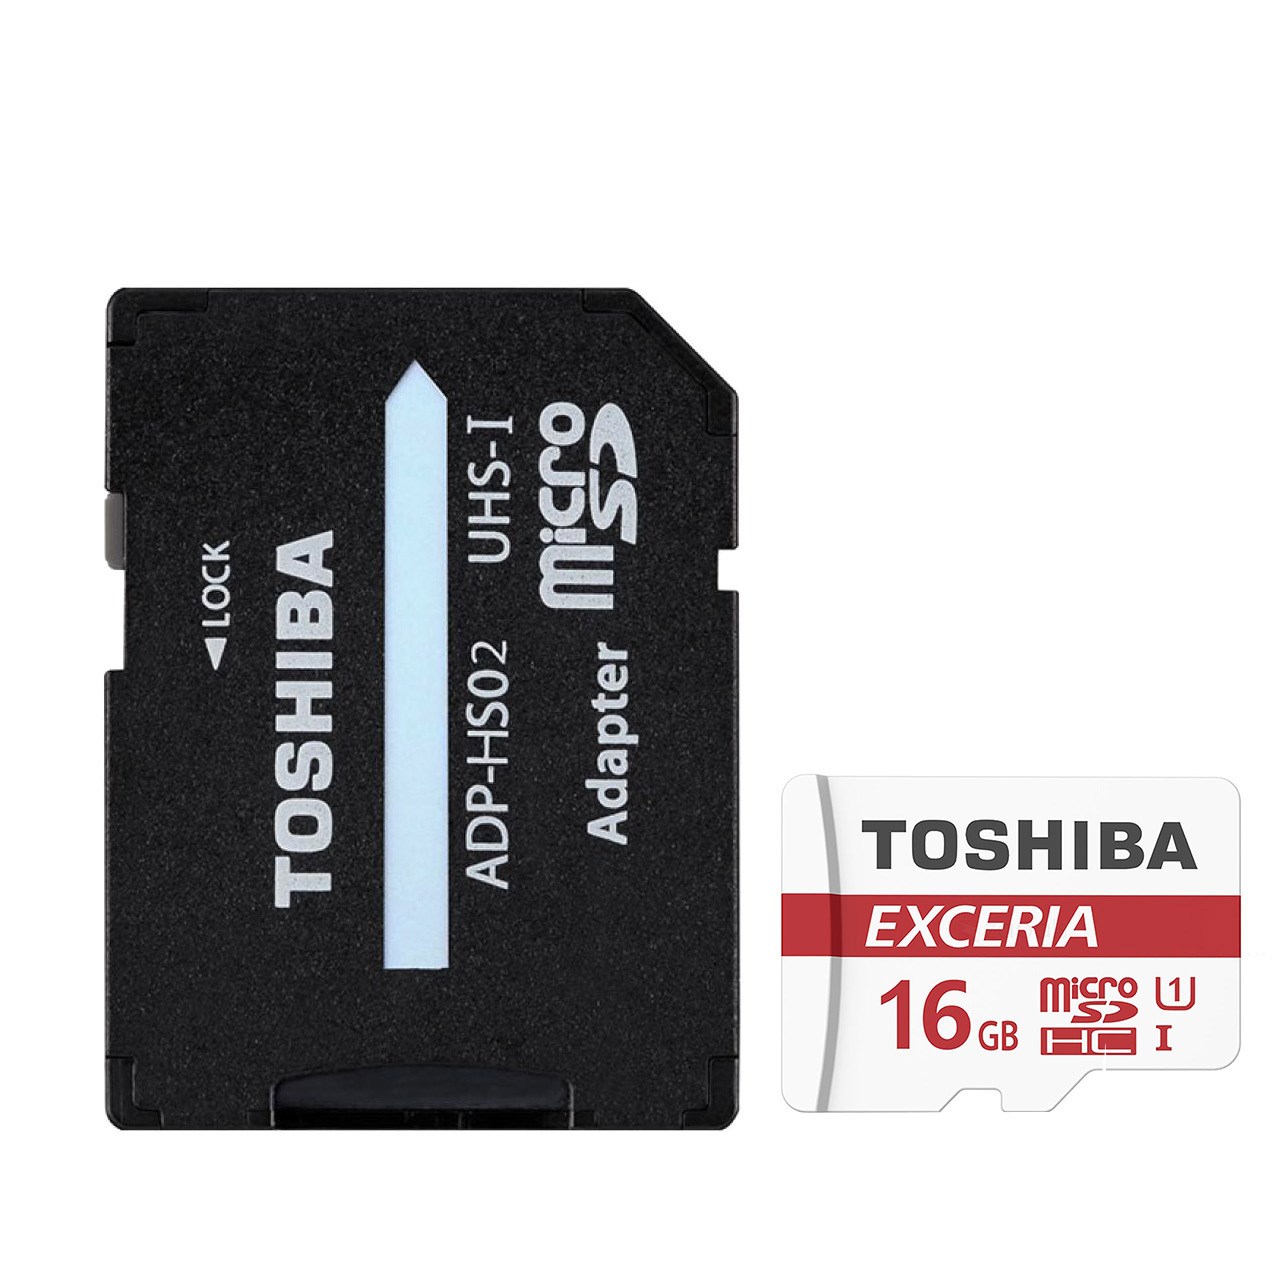 کارت حافظه microSDHC مدل EXCERIA M302-EA کلاس 10 استاندارد UHS-I U1 سرعت 90MBps همراه با آداپتور SD ظرفیت 16 گیگابایت